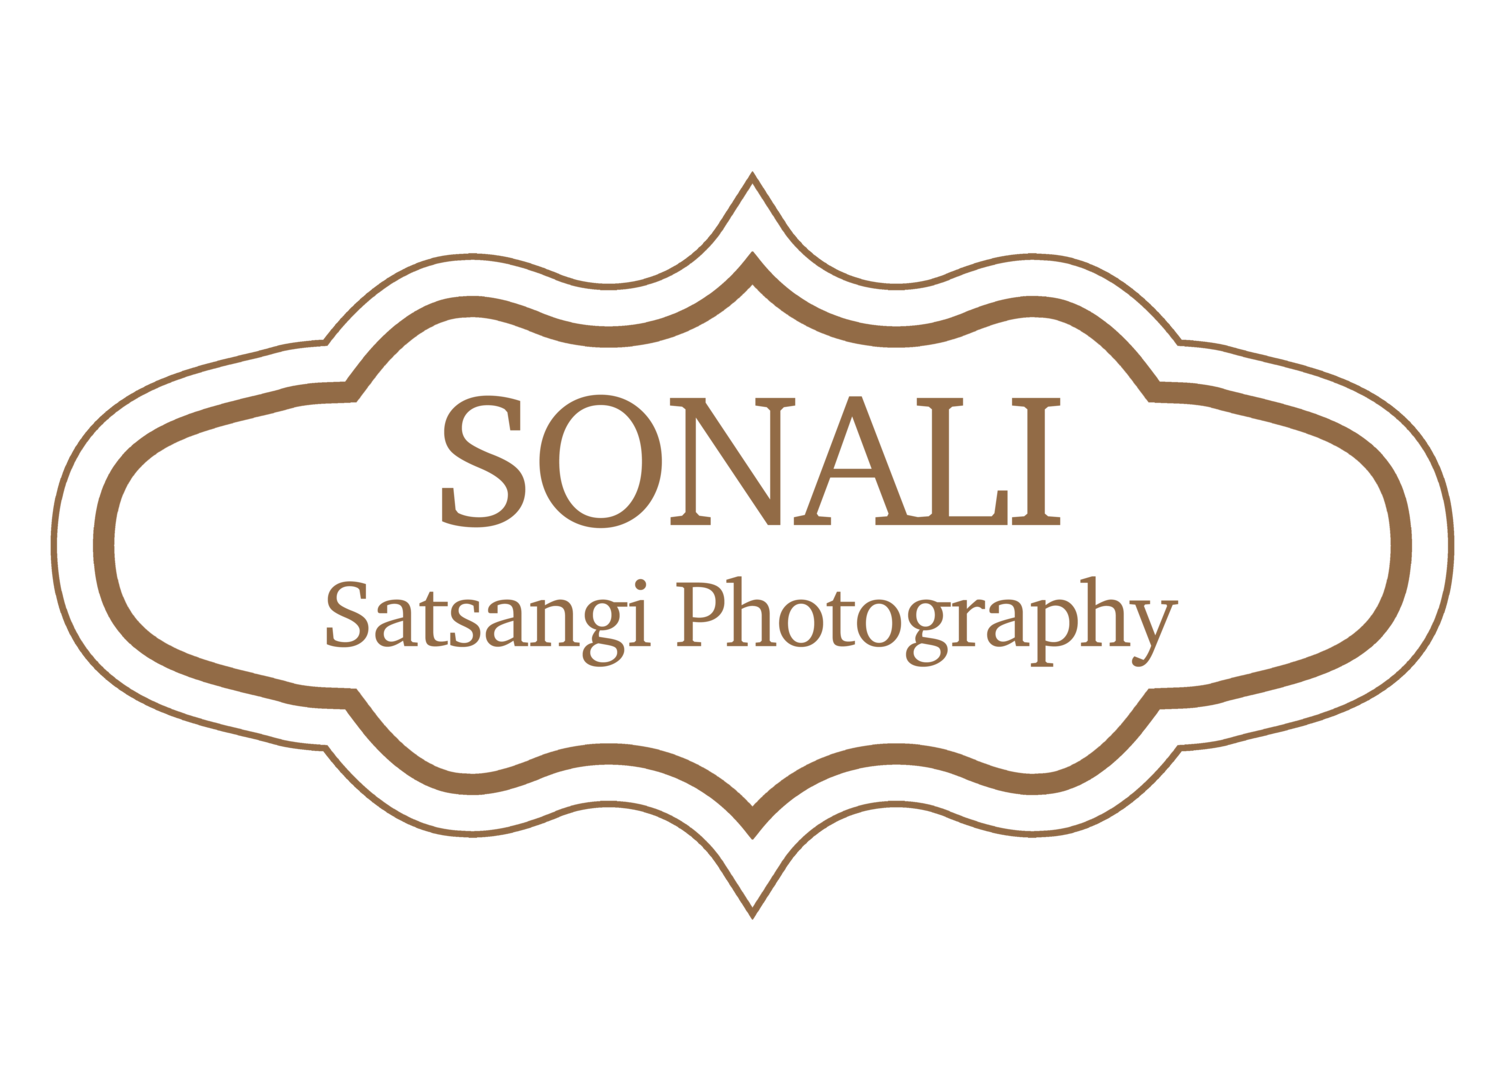 Sonali Satsangi Photography